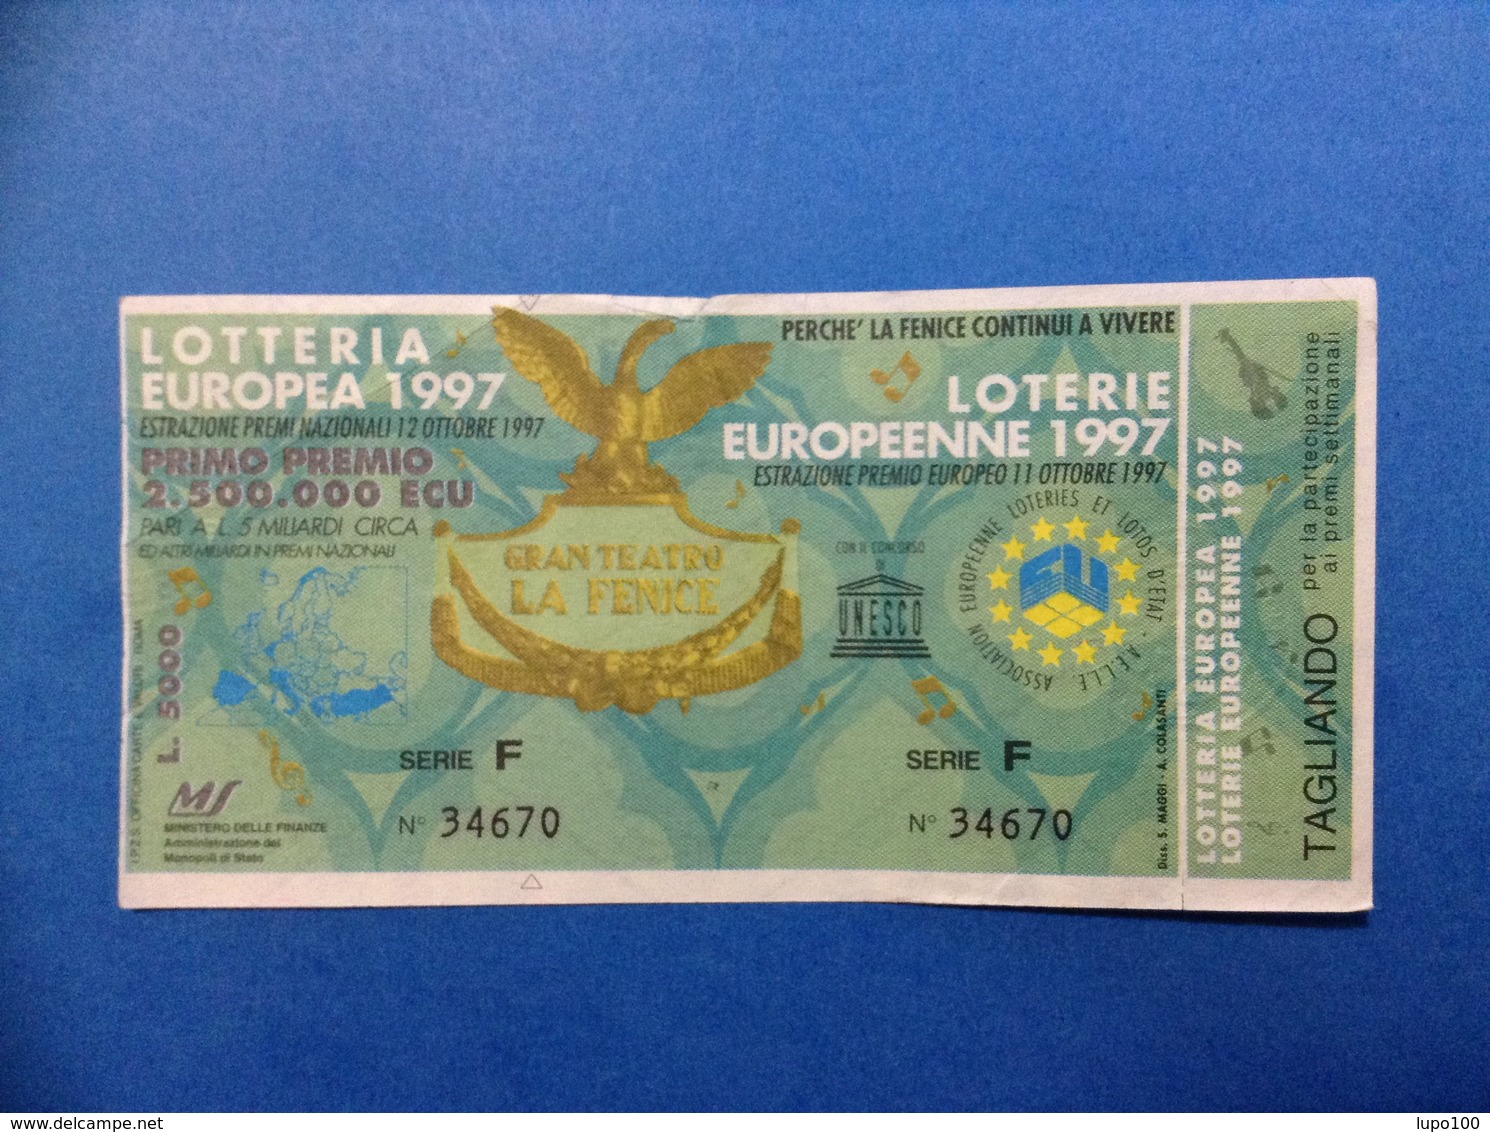 1997 BIGLIETTO LOTTERIA EUROPEA E NAZIONALE UNESCO GRAN TEATRO LA FENICE - Biglietti Della Lotteria